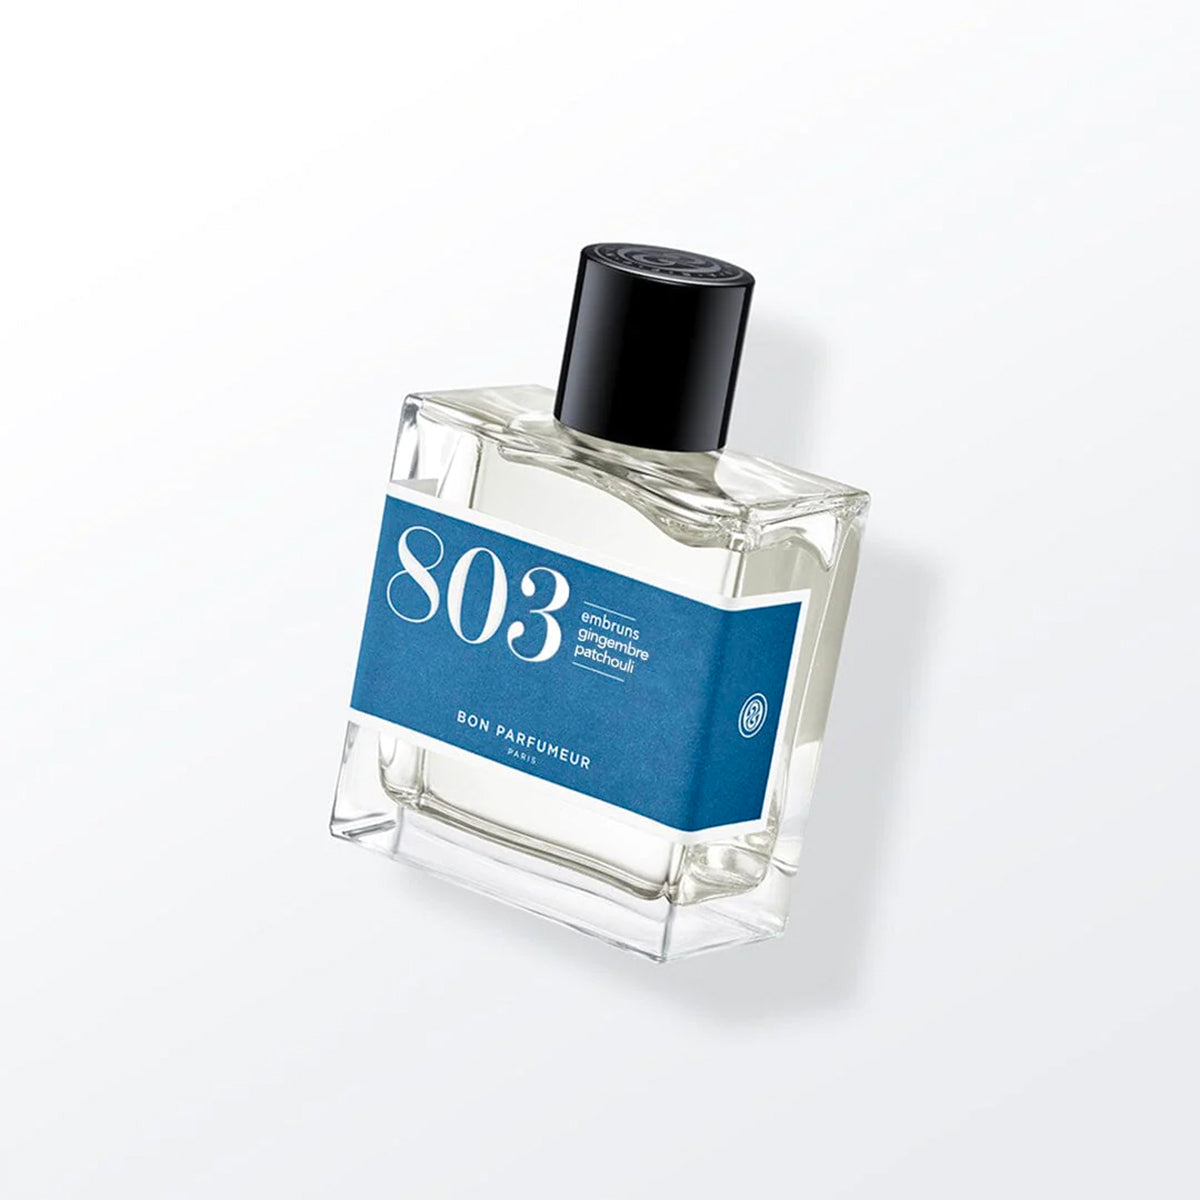 803 by Bon Parfumeur 